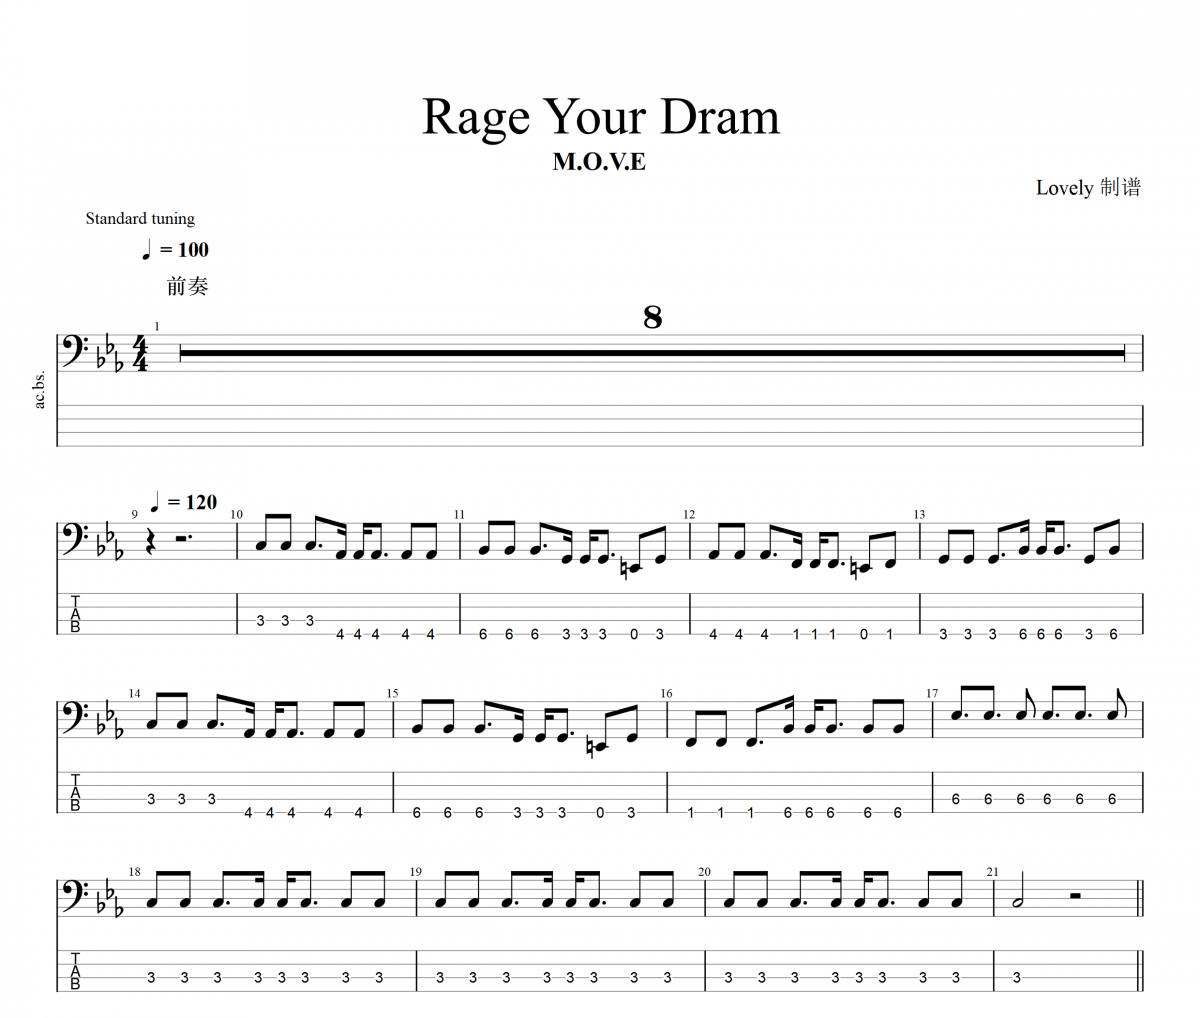 Rage your dream贝斯谱 m.o.v.e《 Rage your dream》四线谱|贝斯谱+动态视频